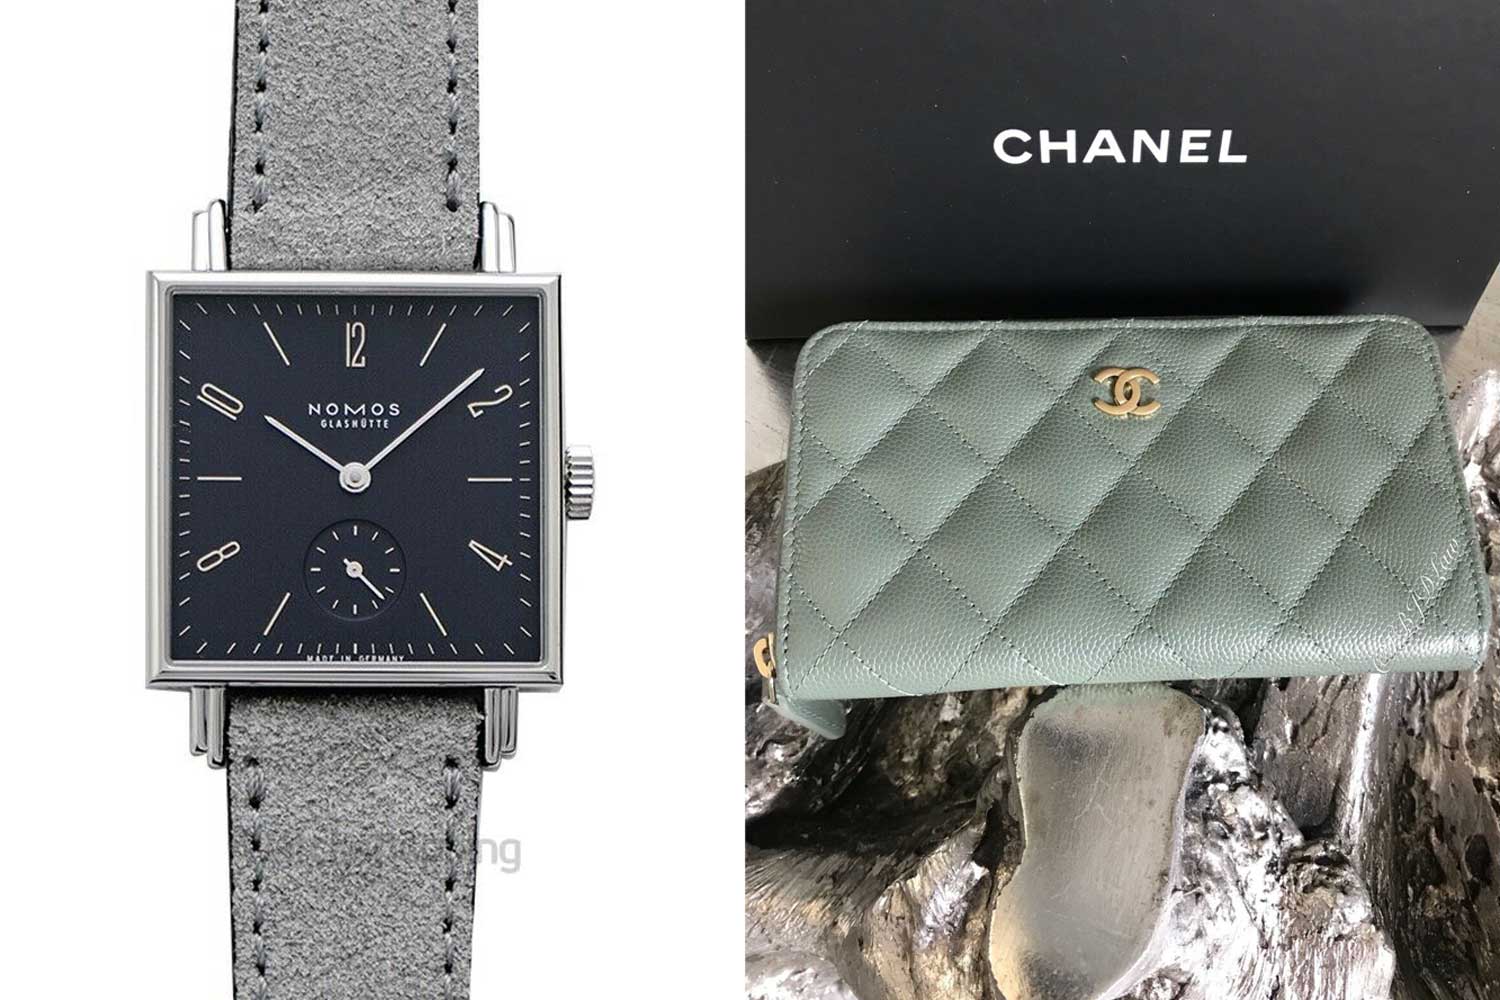 Nomos Tetra 450 in dark blue dial and Chanel “Caviar” zip wallet in light green color